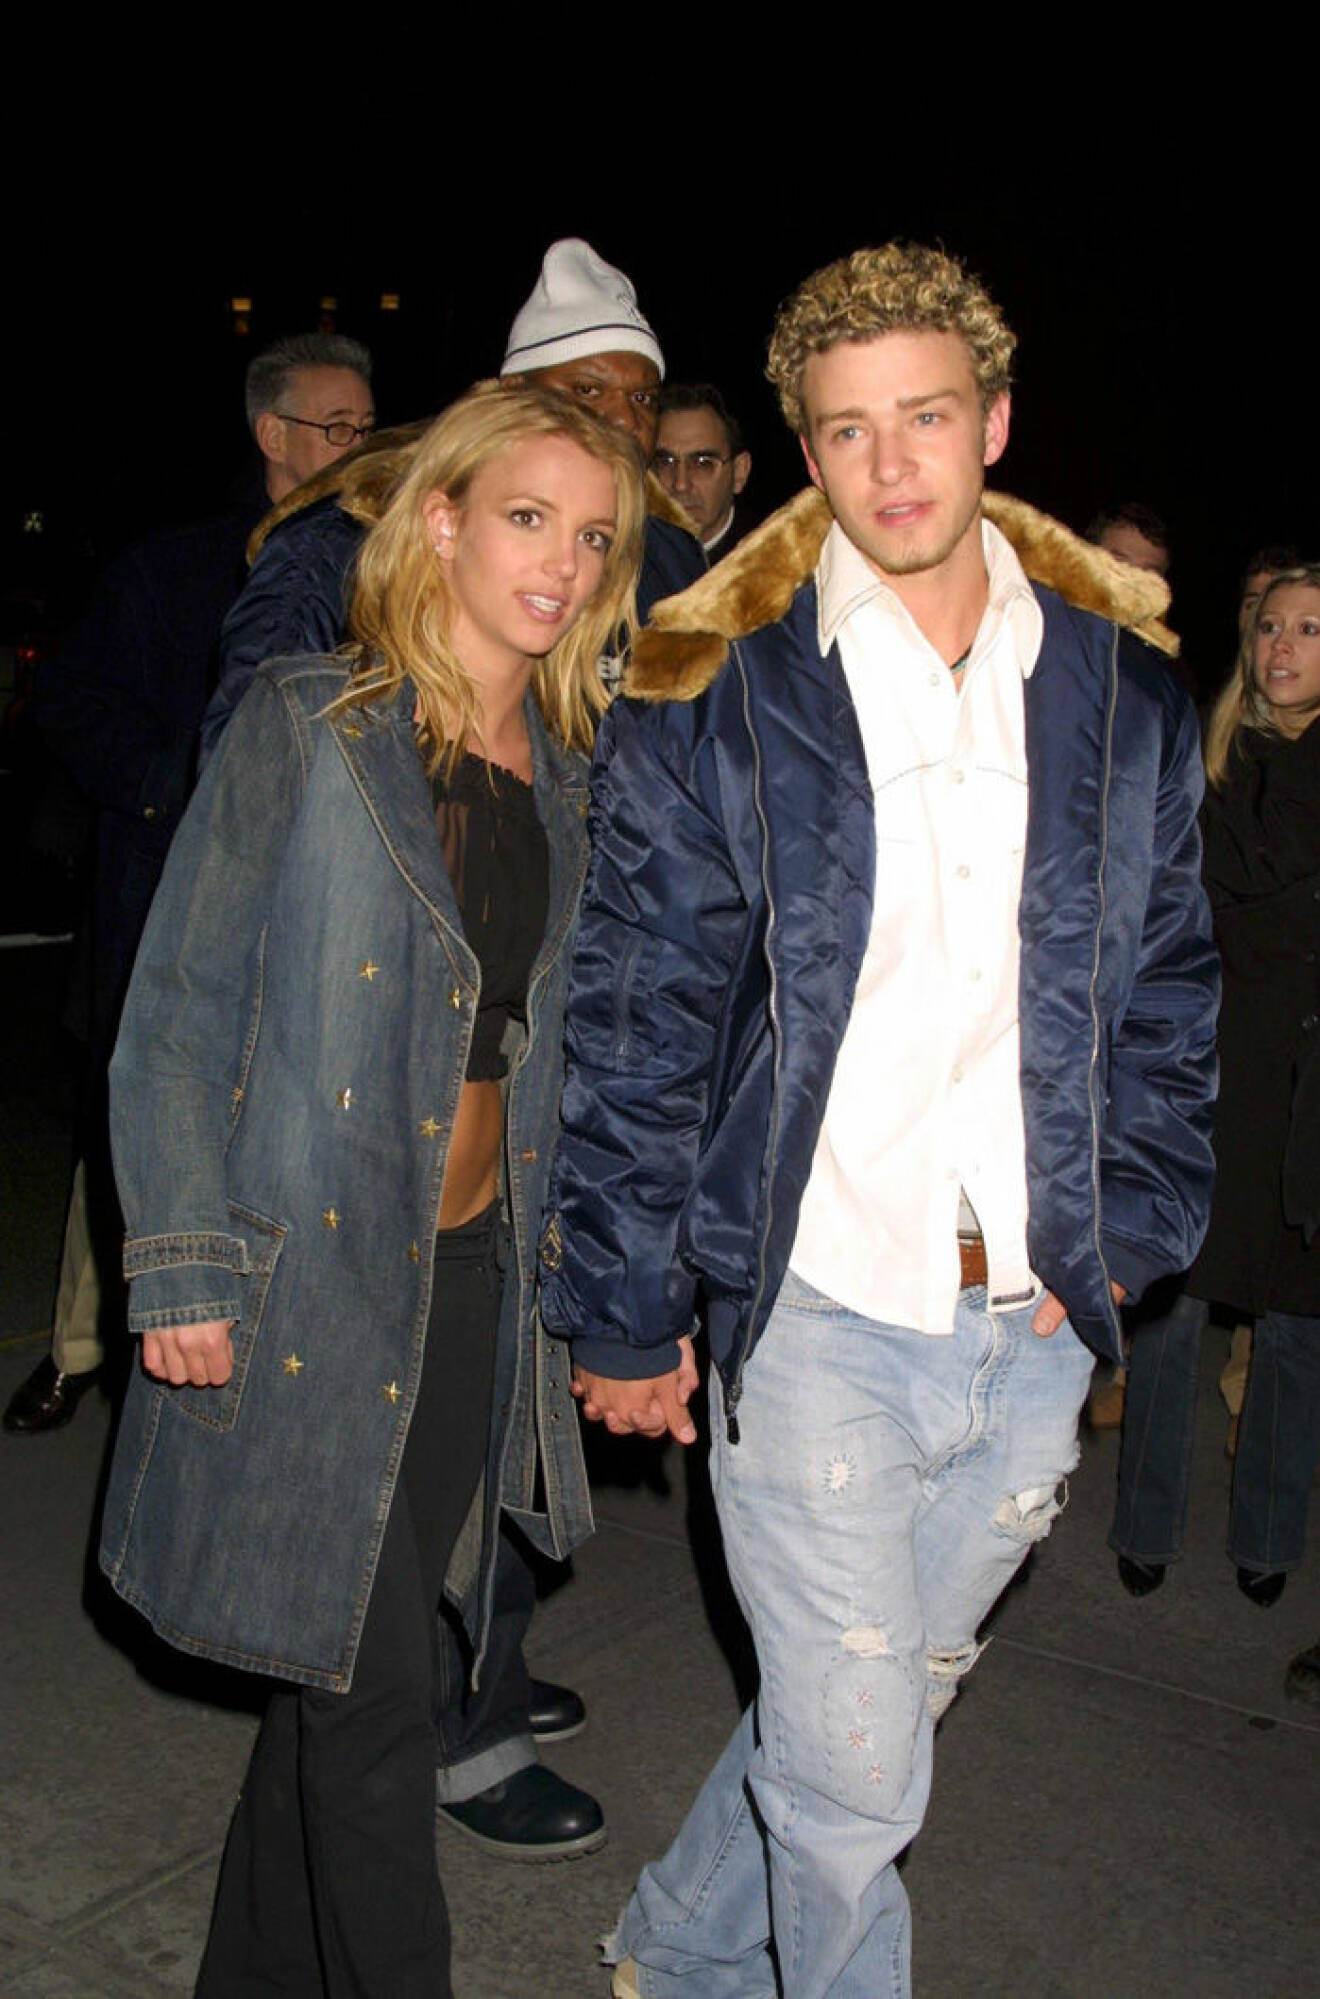 En bild på Britney Spears och Justin Timberlake 2002.